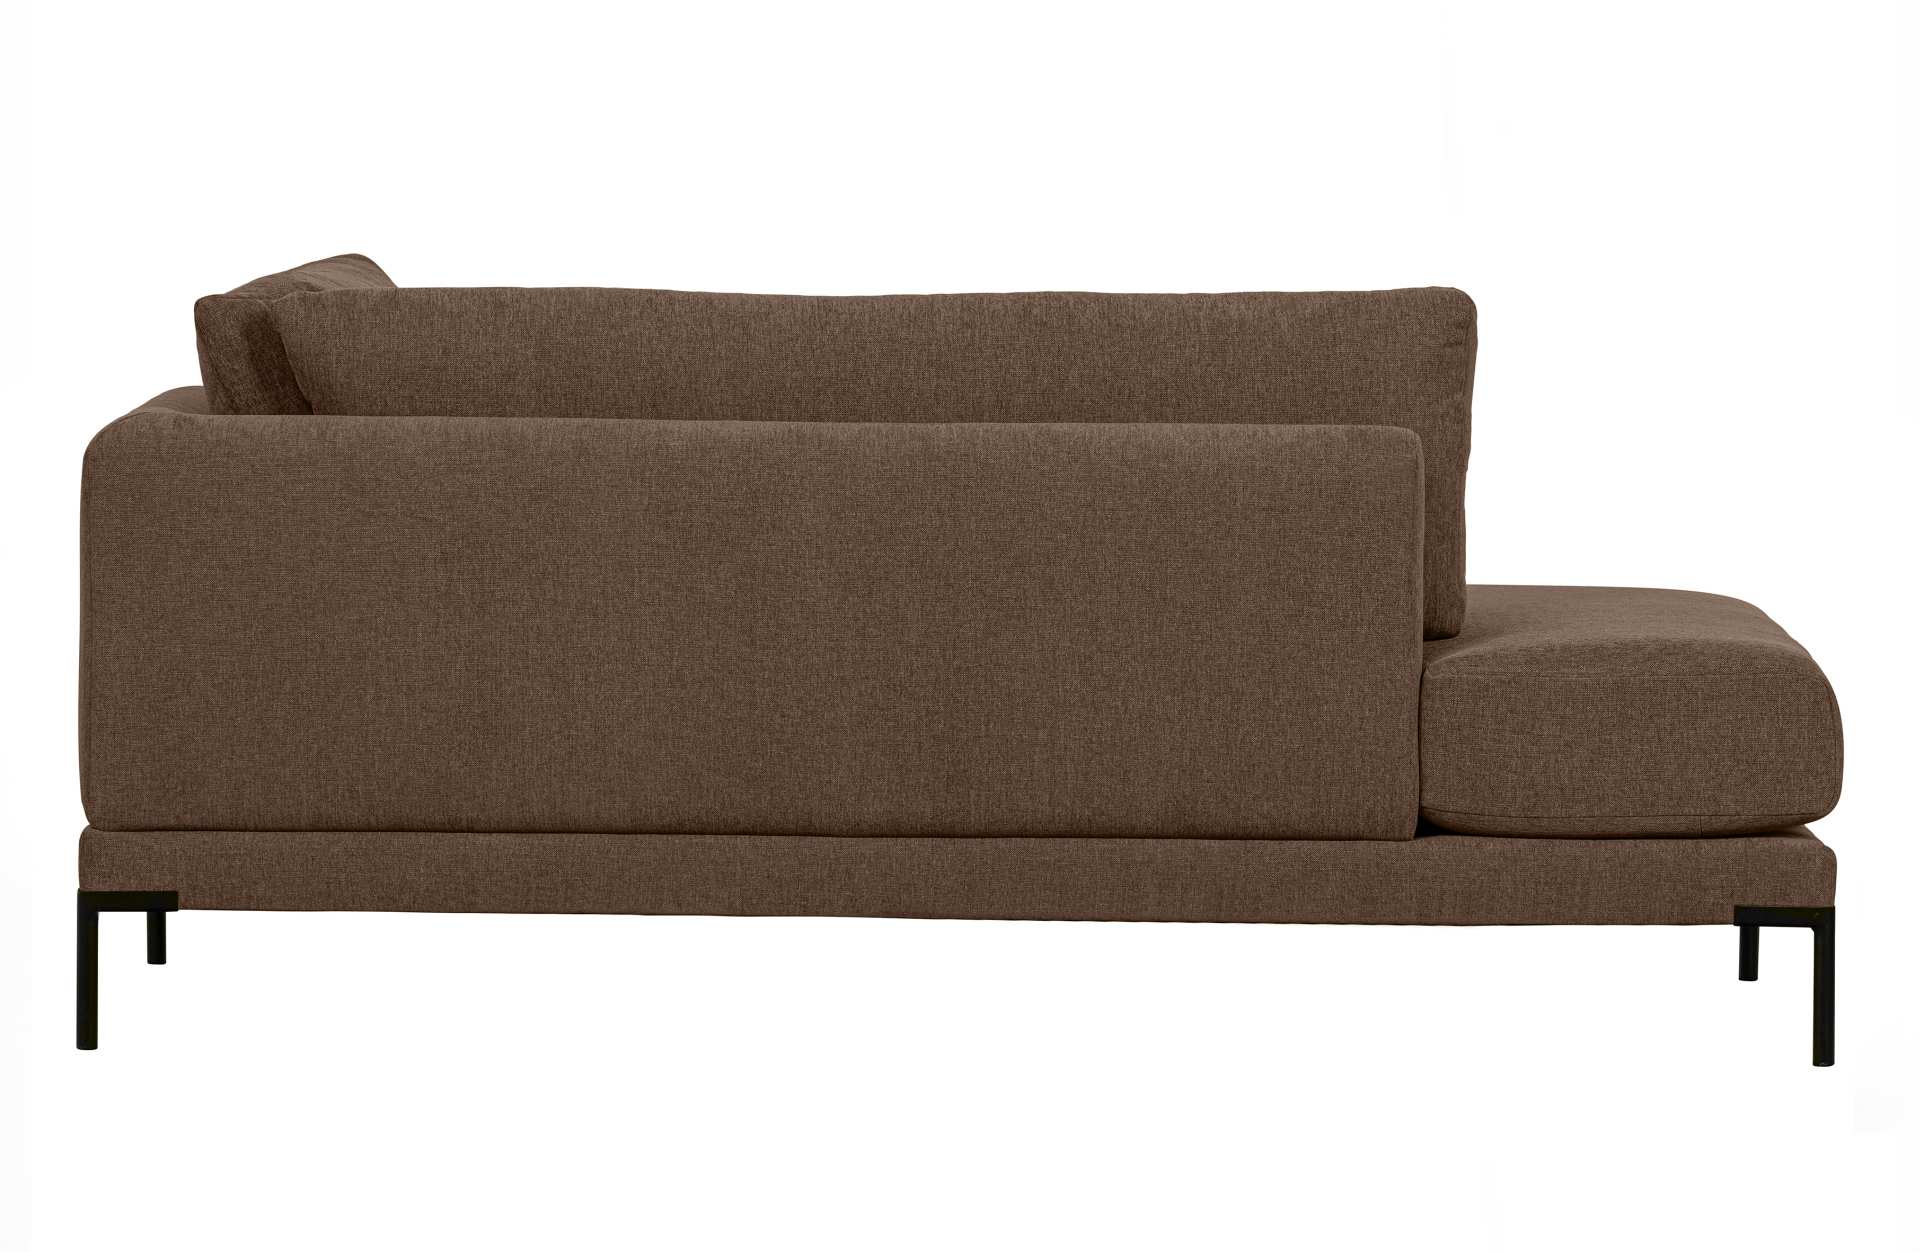 Das Modulsofa Couple Lounge überzeugt mit seinem modernen Design. Das Lounge Element mit der Ausführung Links wurde aus Melange Stoff gefertigt, welcher einen einen braunen Farbton besitzen. Das Gestell ist aus Metall und hat eine schwarze Farbe. Das Elem